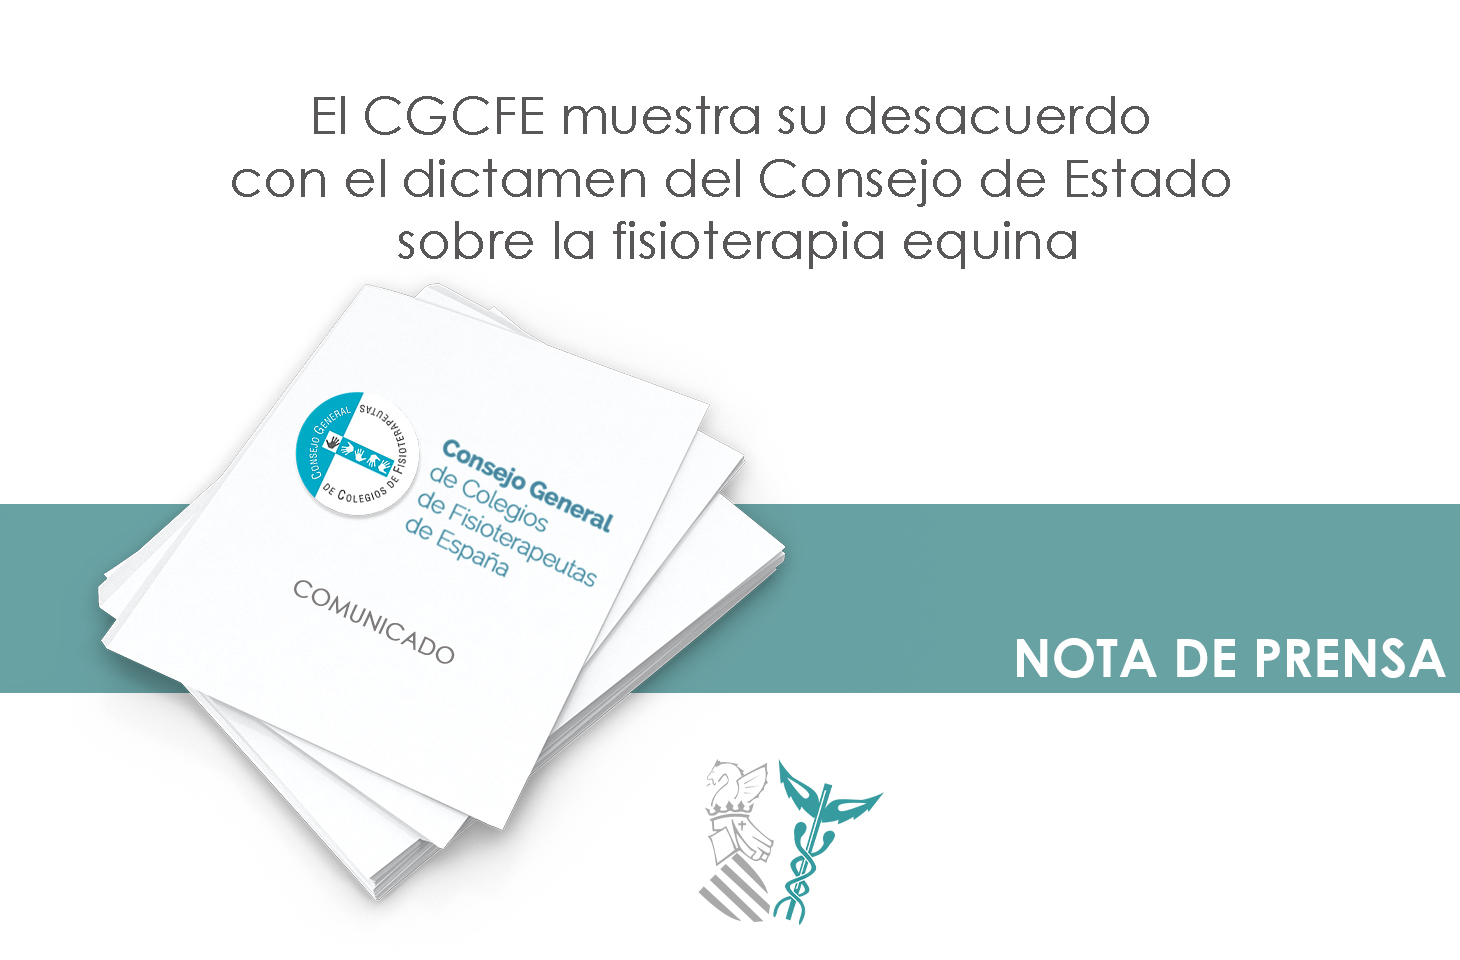 El CGCFE manifiesta su desacuerdo con el dictamen del Consejo de Estado sobre la fisioterapia equina que no entra en el fondo de la cuestión